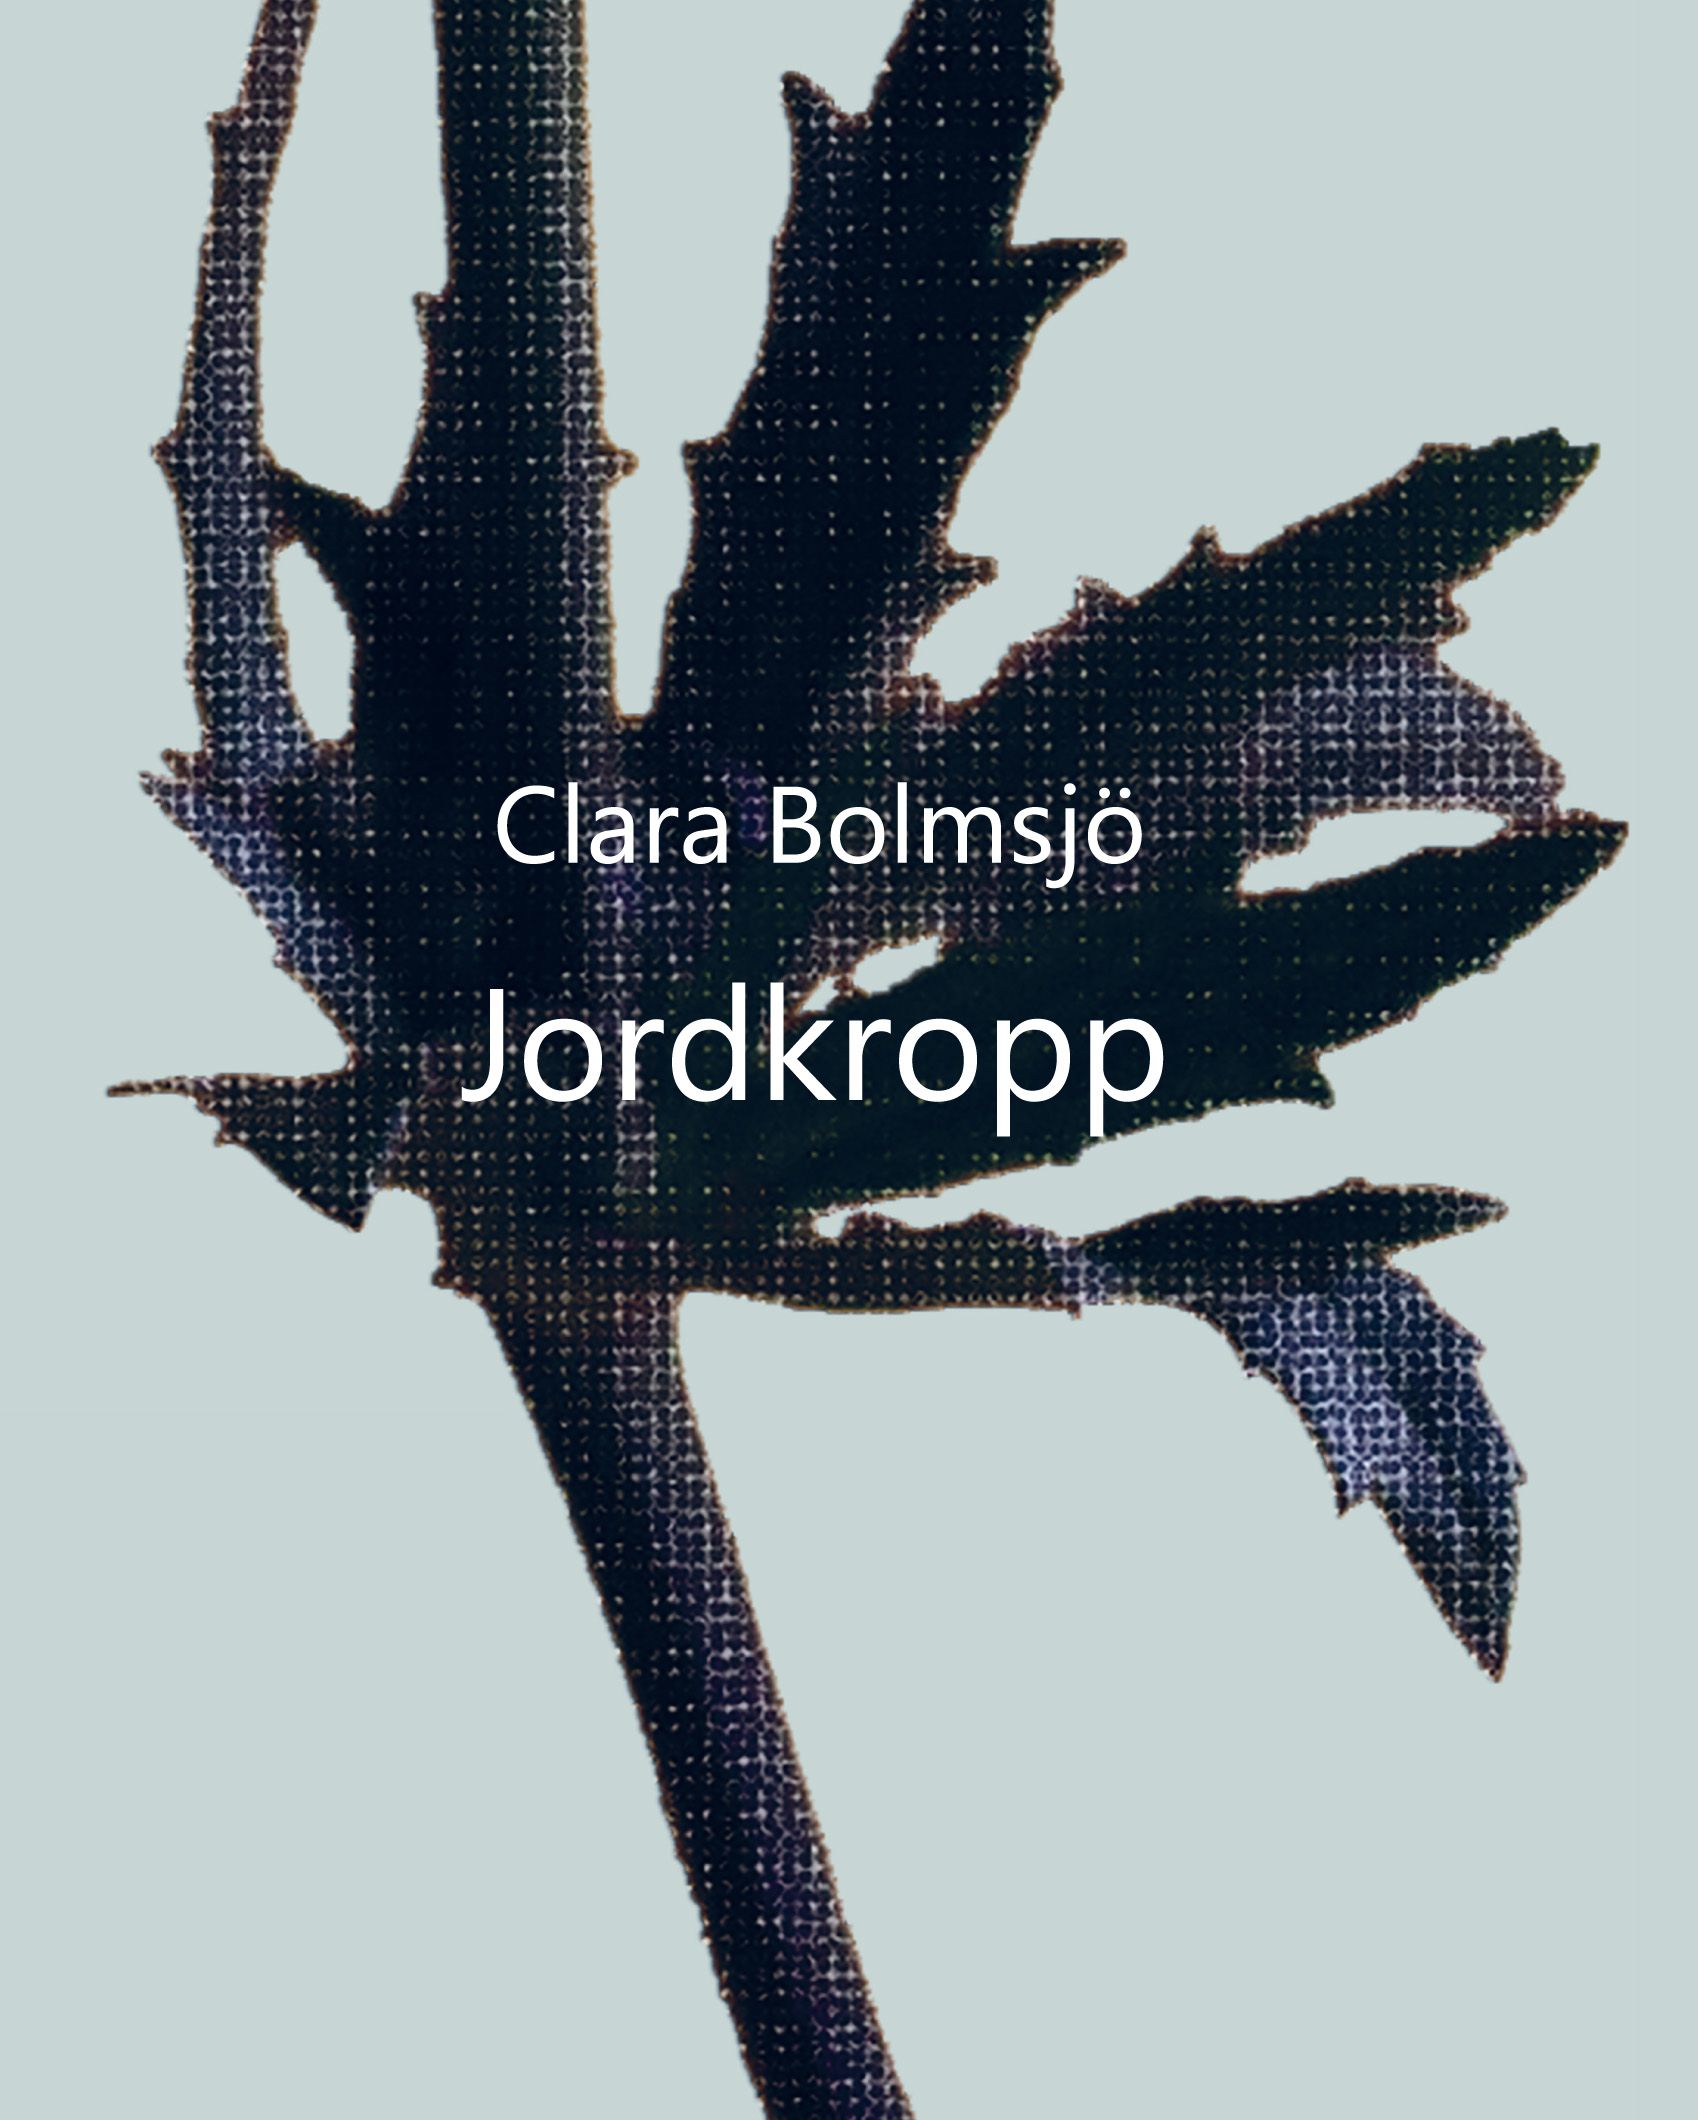 Jordkropp, e-bok av Clara Bolmsjö